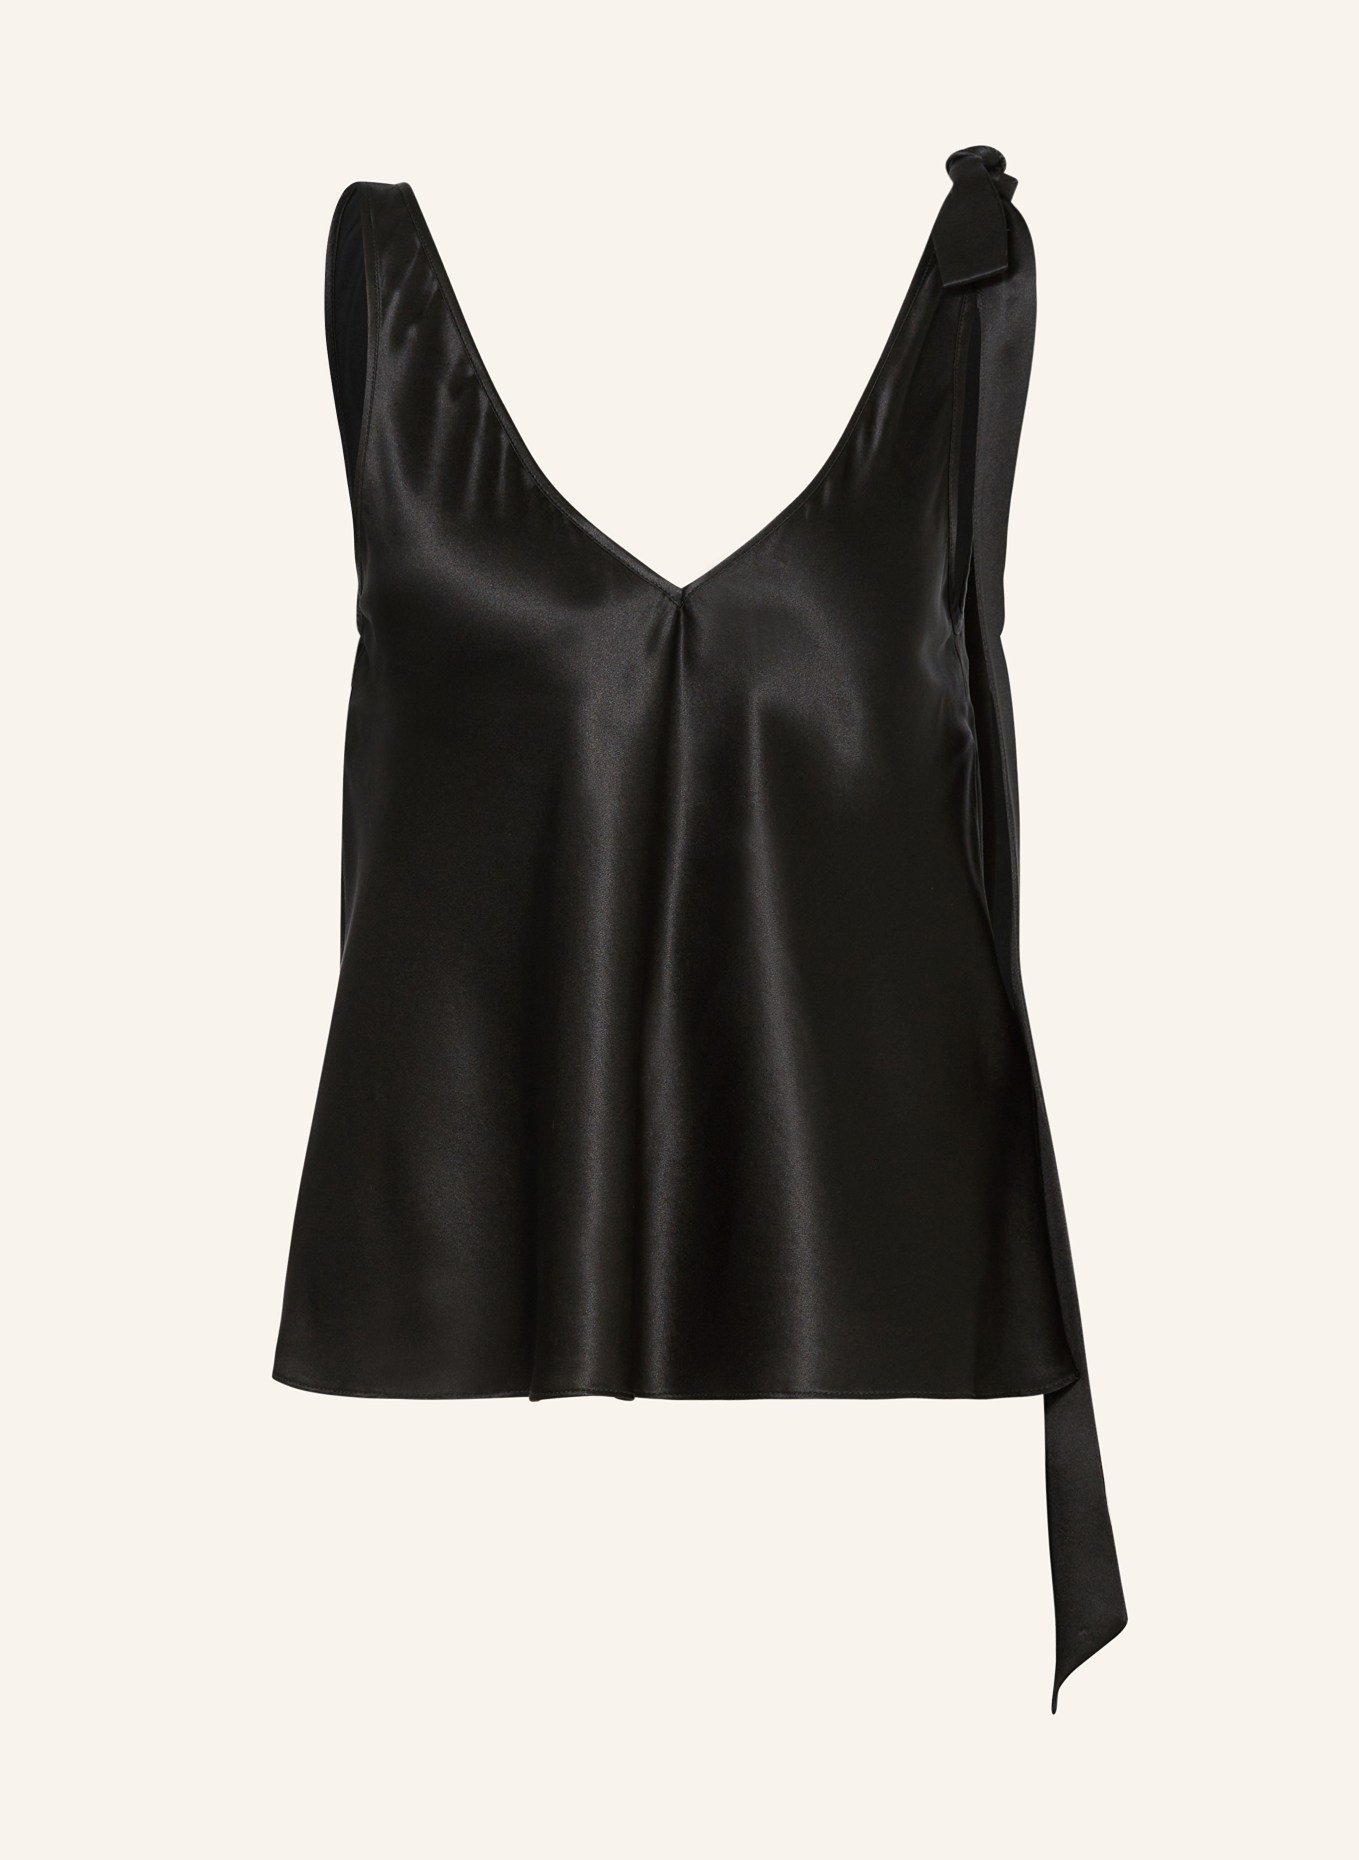 JW ANDERSON Silk top, Color: BLACK (Image 1)